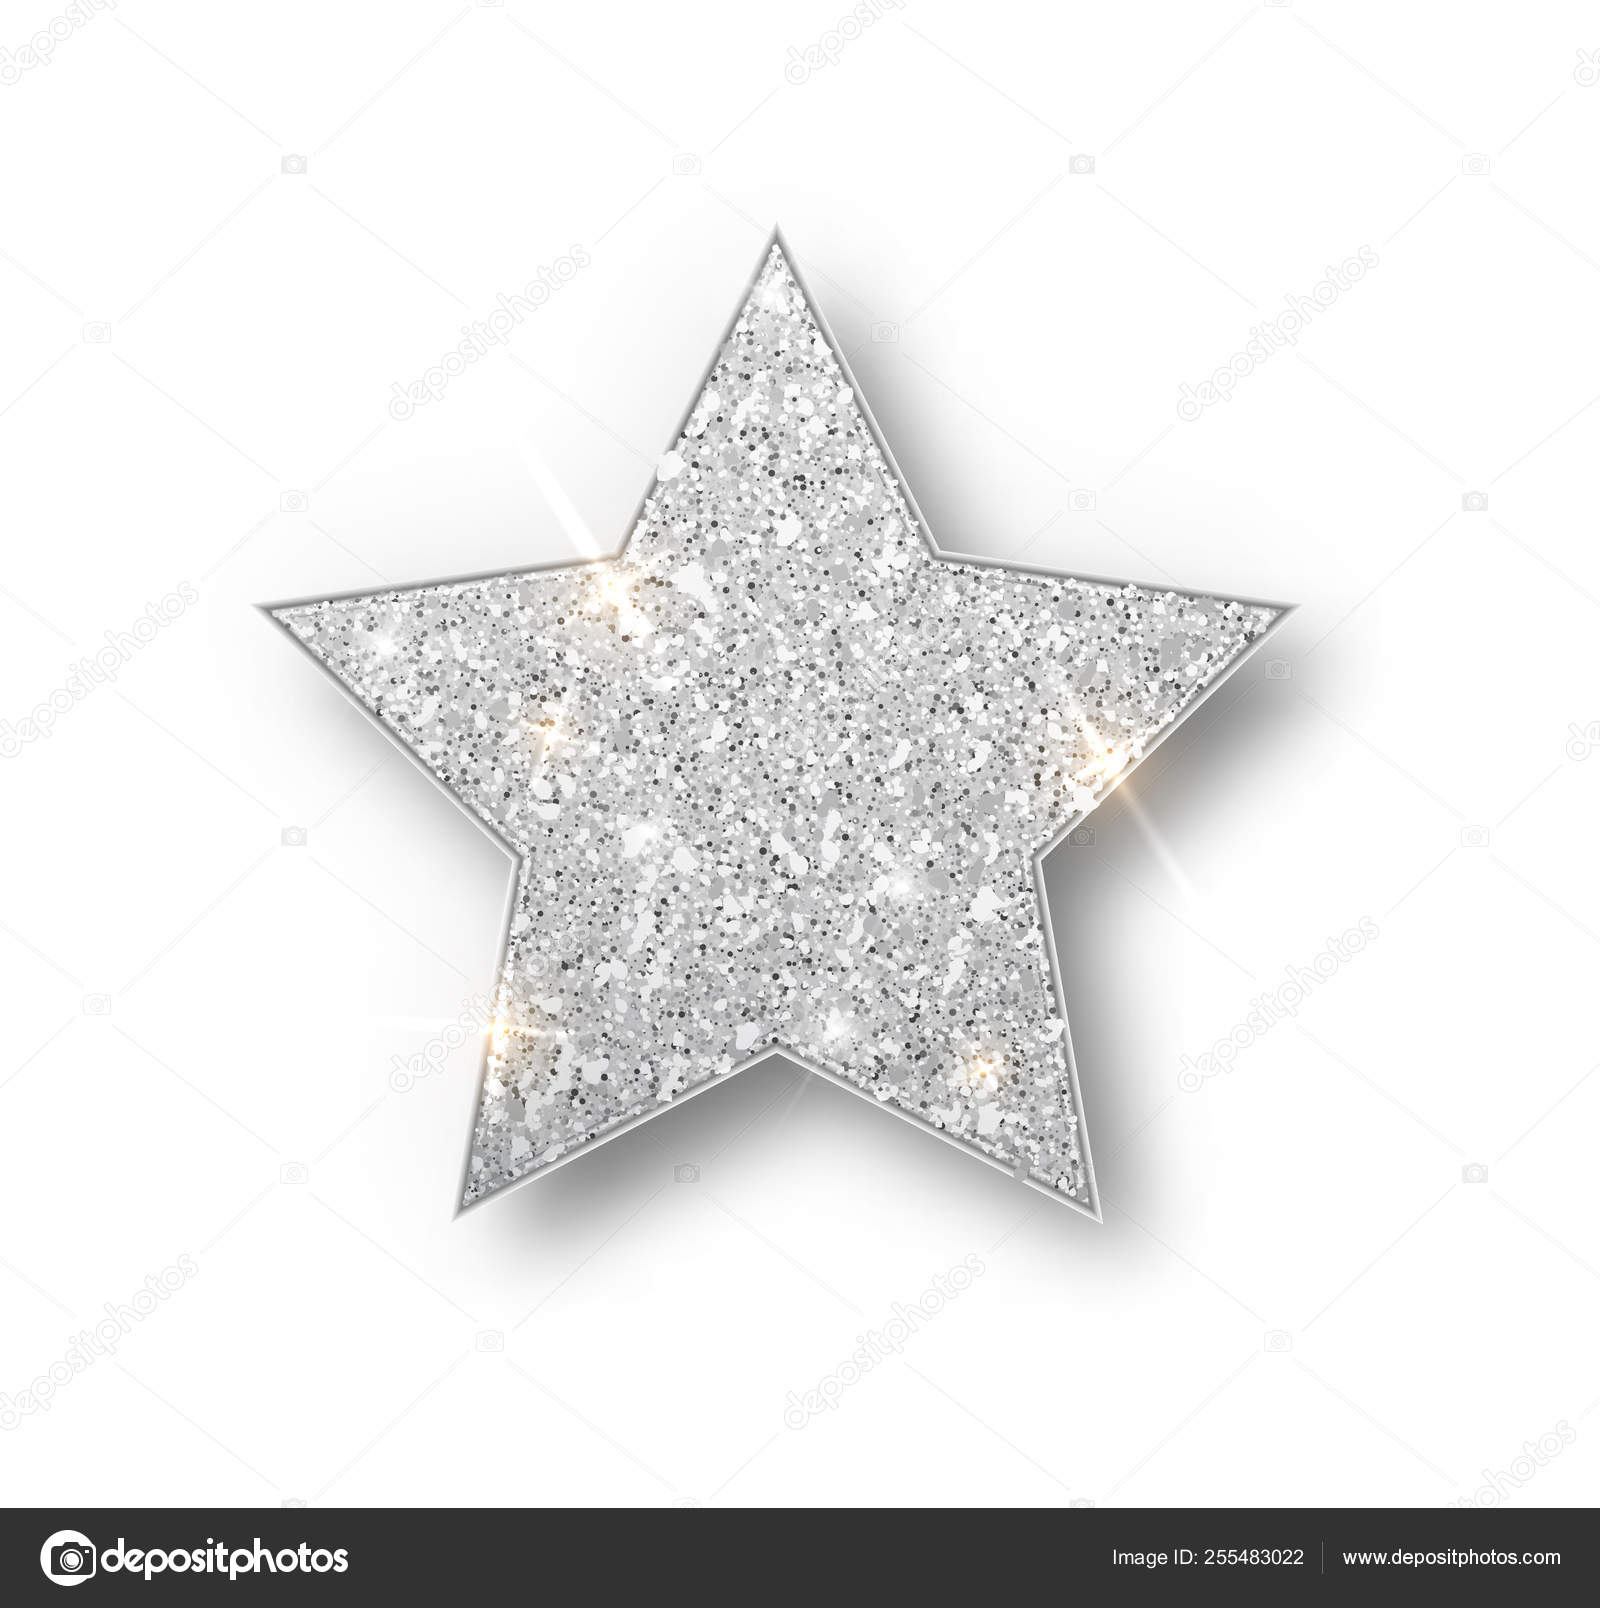 White/Silver Glitter Star